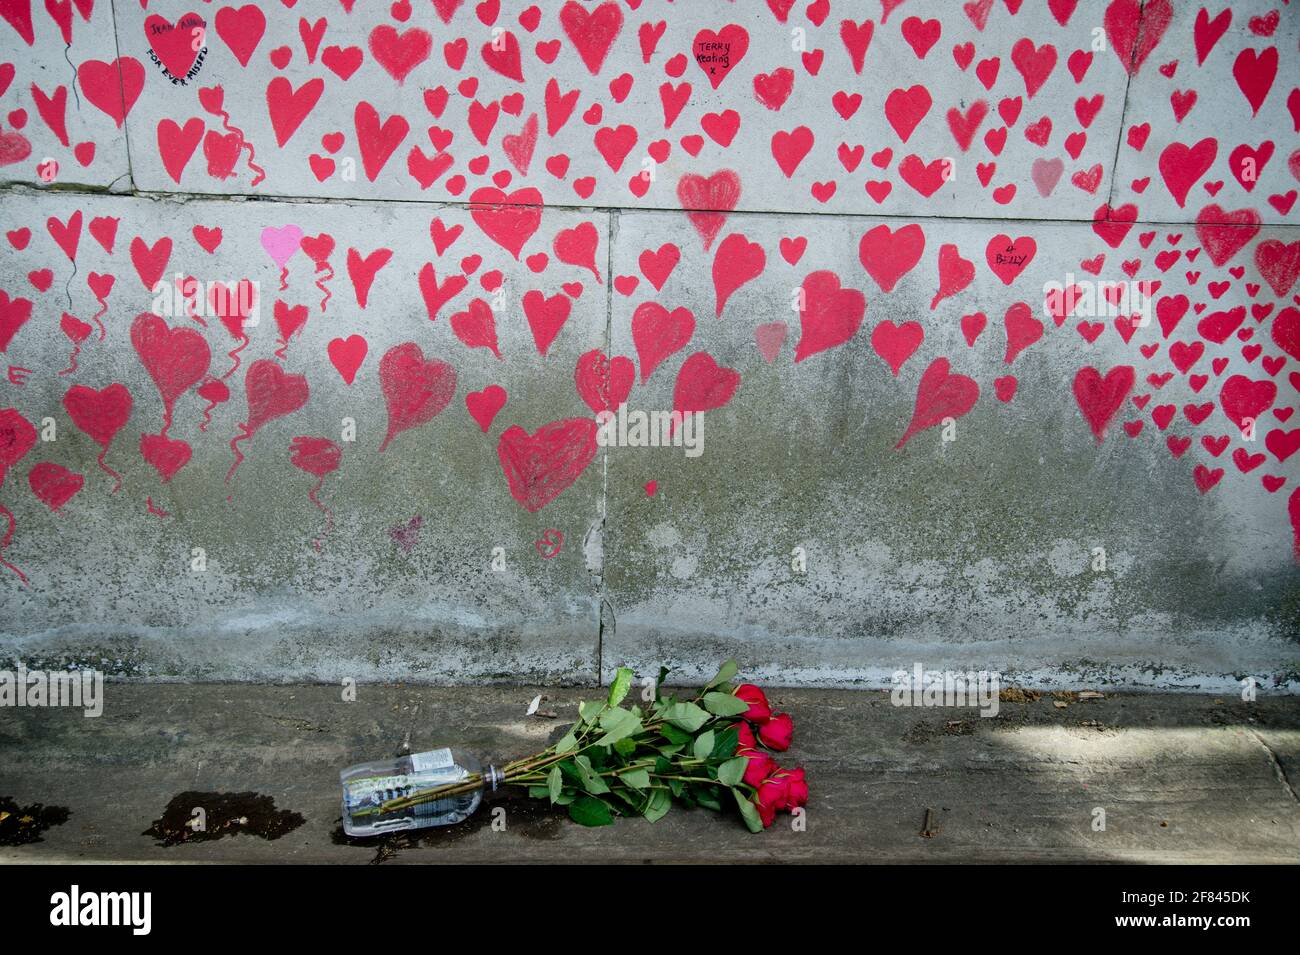 Southbank, Londres, Inglaterra, Reino Unido. National Covid Memorial Wall. Corazones rojos para commerecer a los que murieron de Covid. Foto de stock